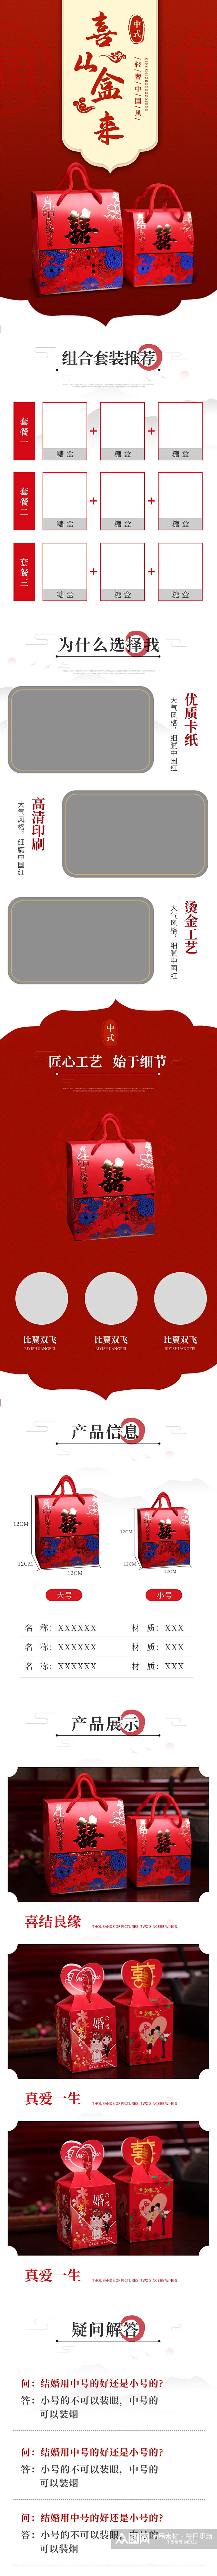 红色喜庆结婚喜糖礼盒中国风详情页素材